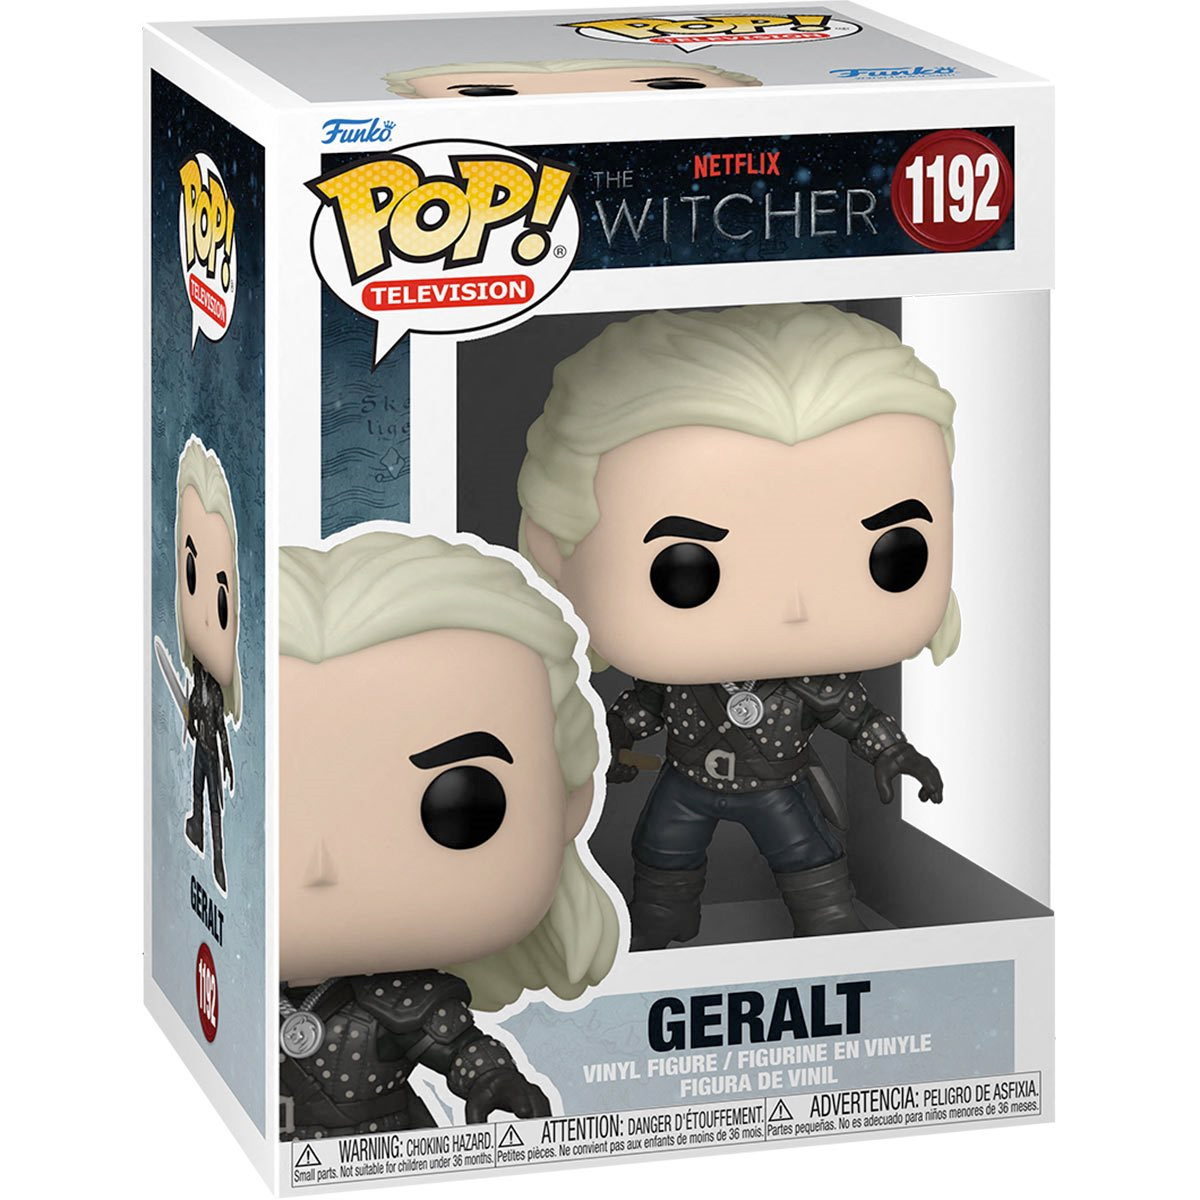 Bonecos Pop! da Série The Witcher do Netflix: Geralt, Yennifer, Jaskier e Ciri